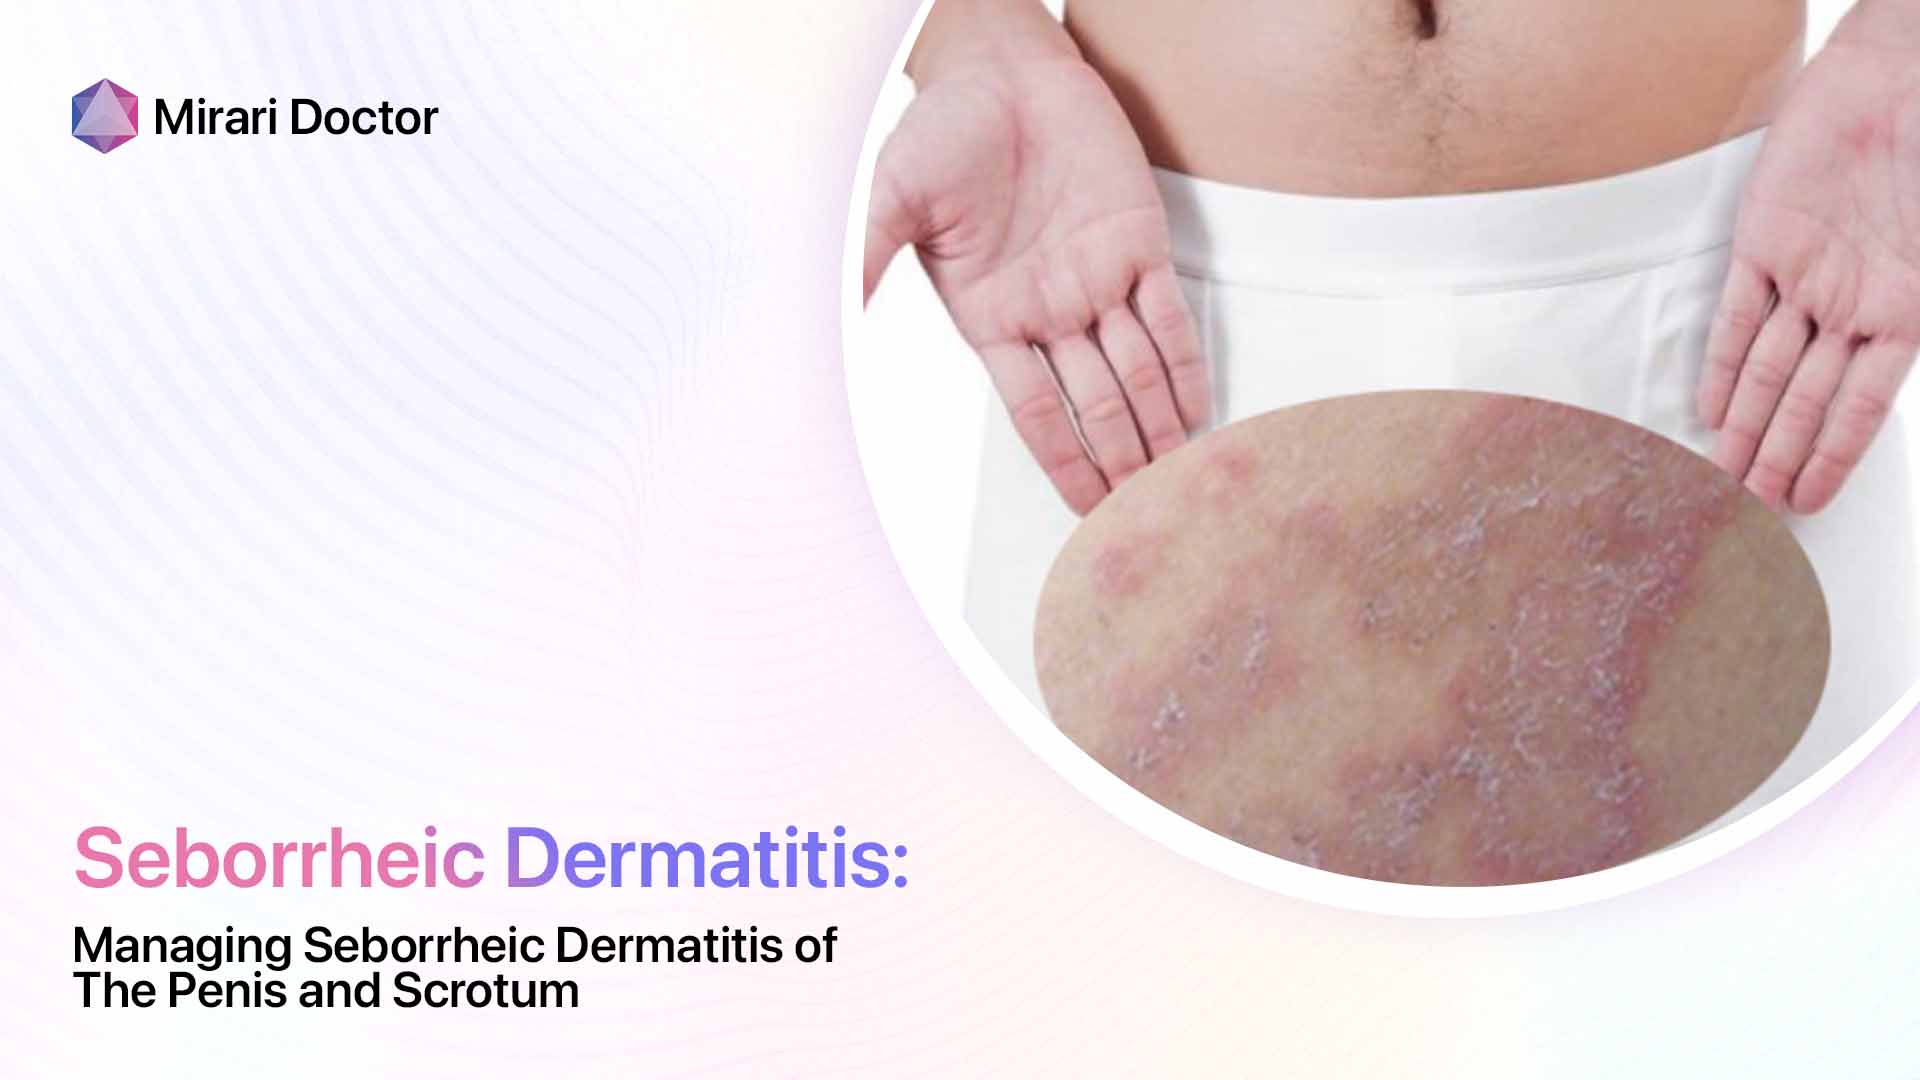 Featured image for “Managing Seborrheic Dermatitis of the Penis and Scrotum”